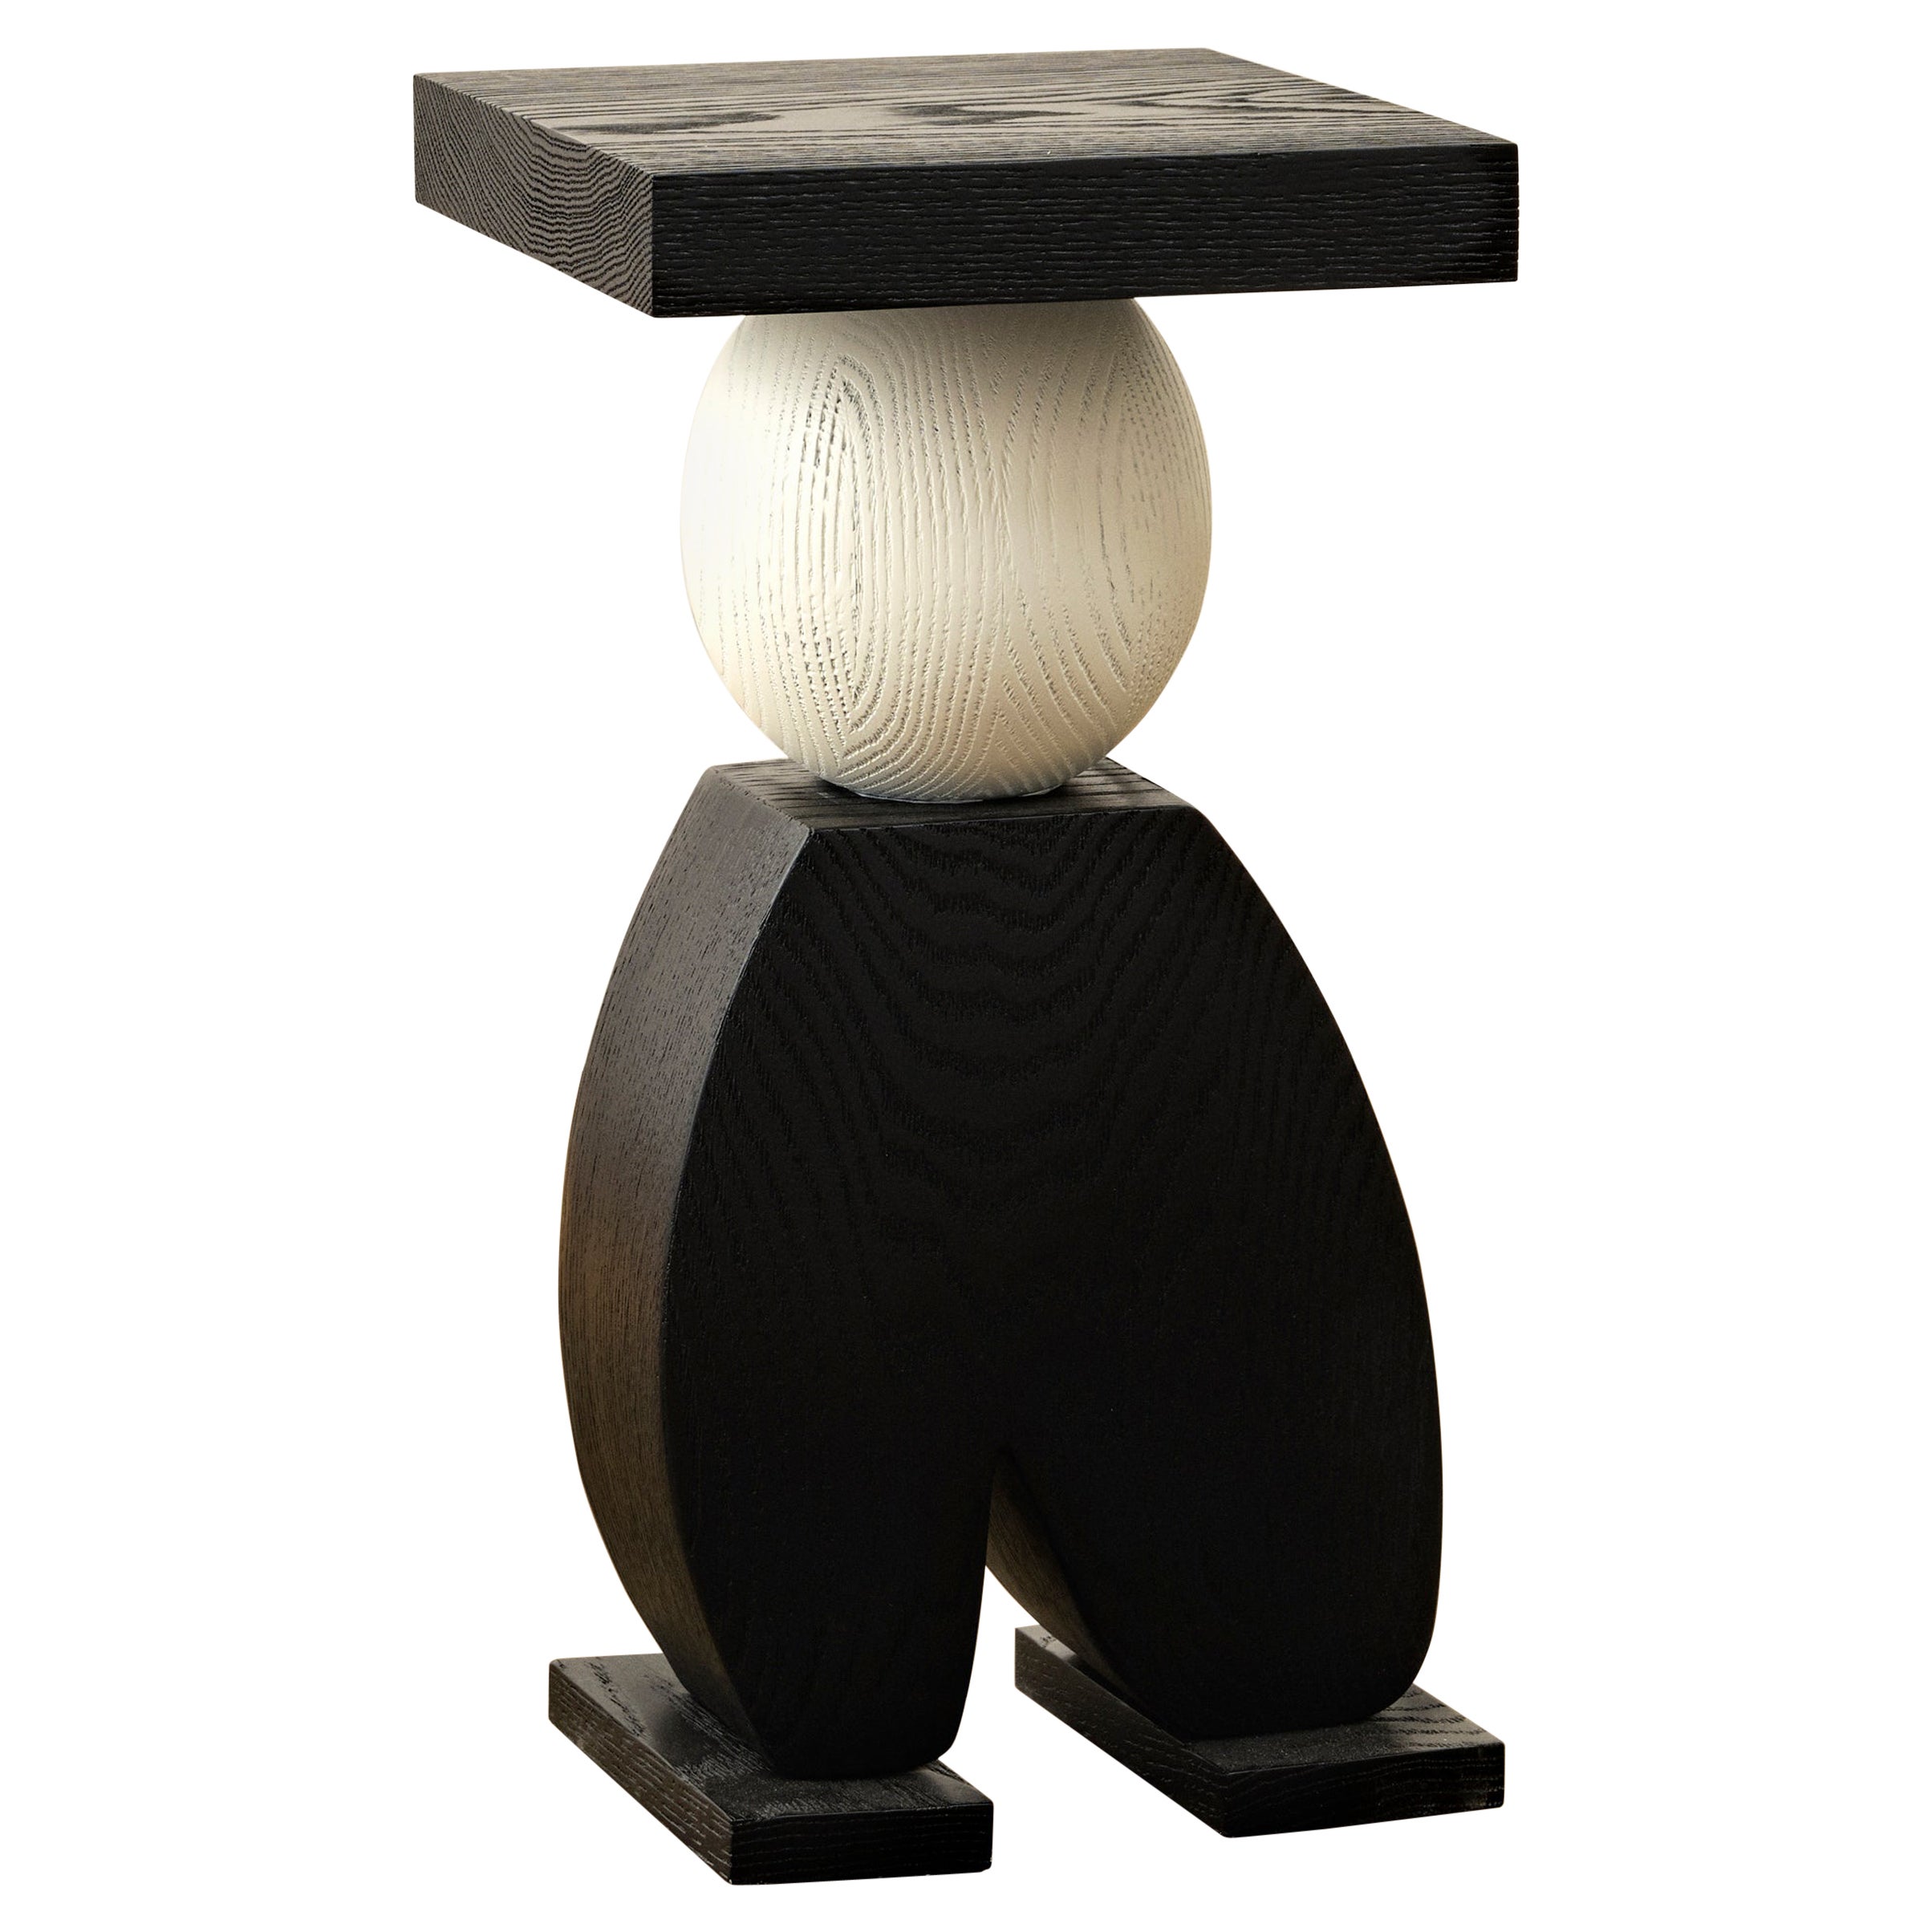 Table d'appoint Pantalone en chêne massif brossé noir et blanc par Animate Objetcs